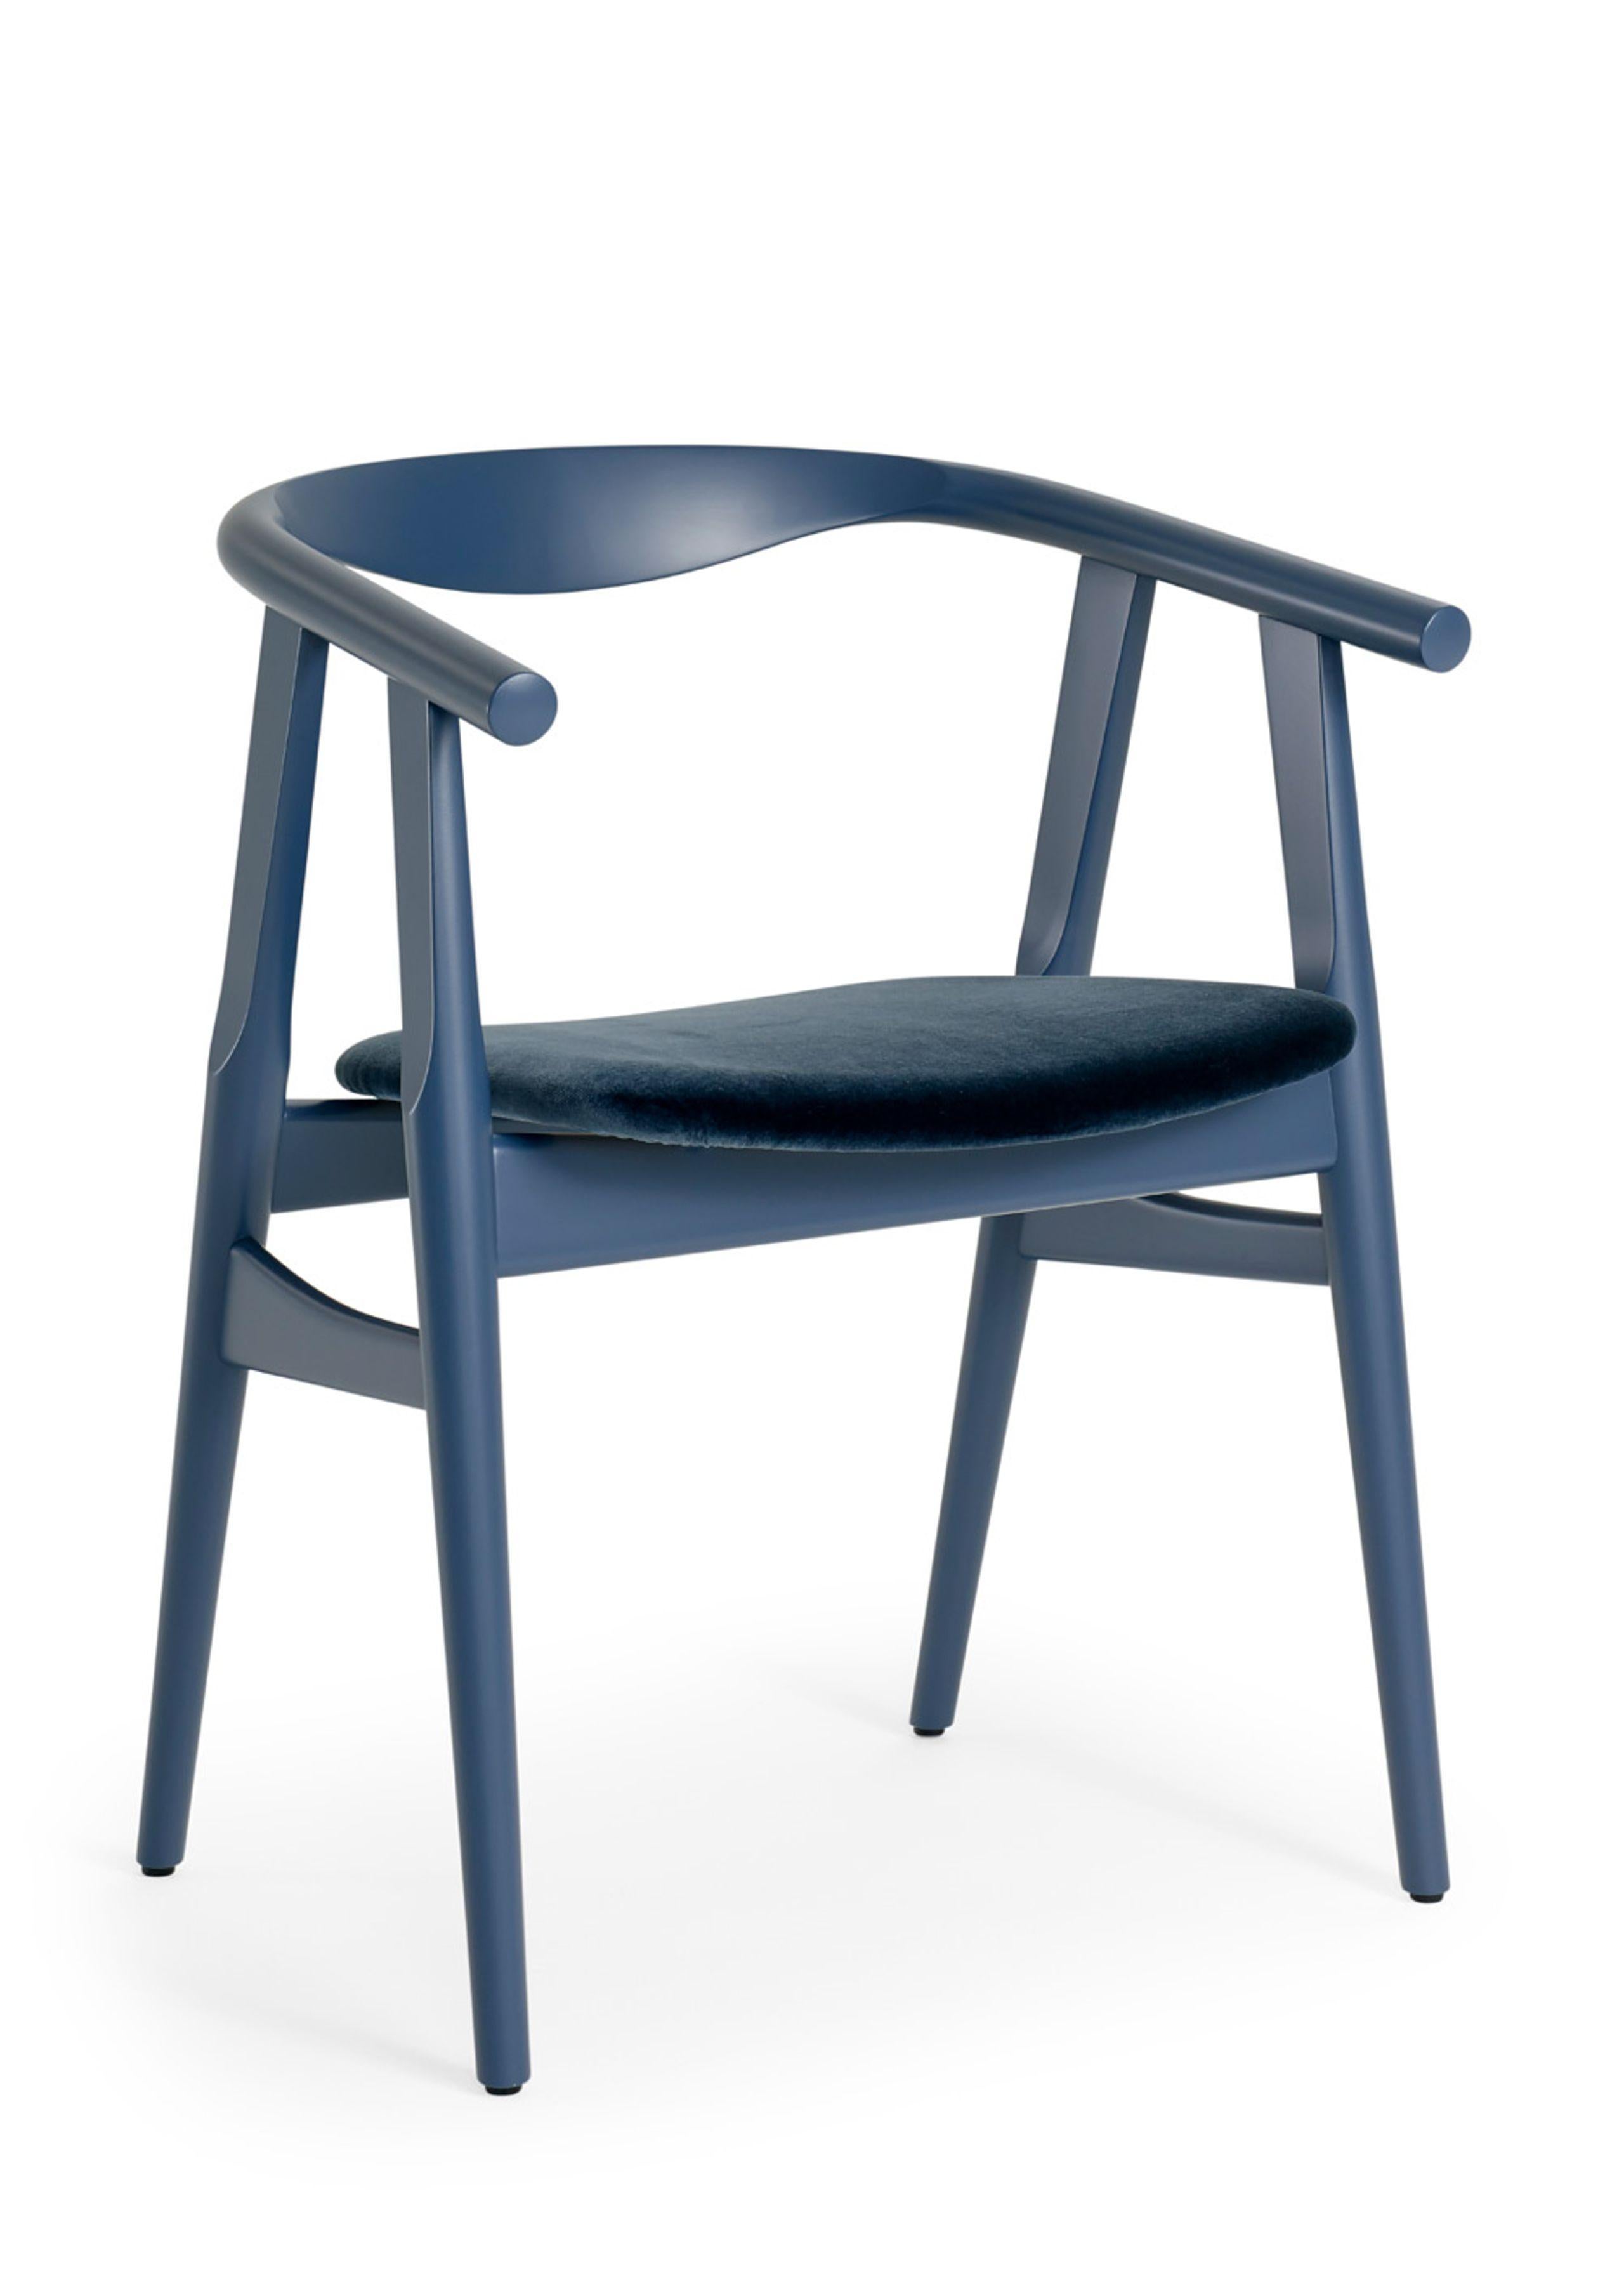 Danish Hans Wegner GE-525 Dining Chair, Stained Beech - Wegner Blue - Harald 3 #182 For Sale